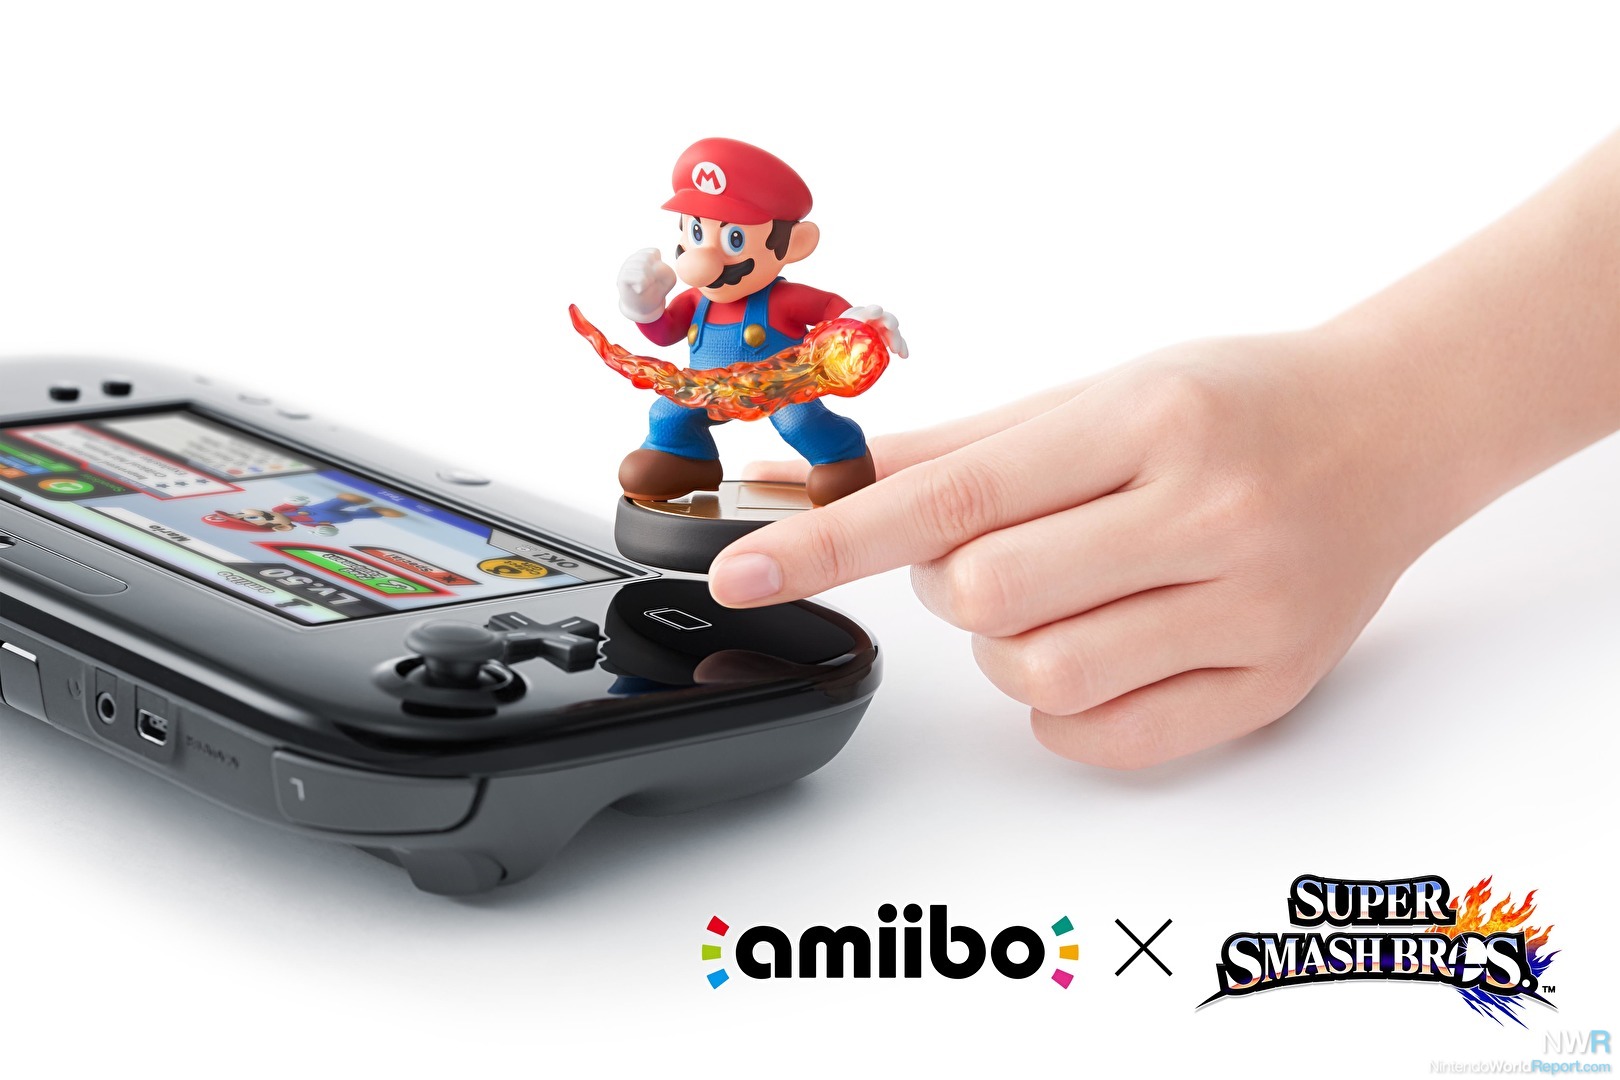 Tutoriel] Paramétrer Amiibo avec la Wii U et Super Smash Bros ! | LedkoHD